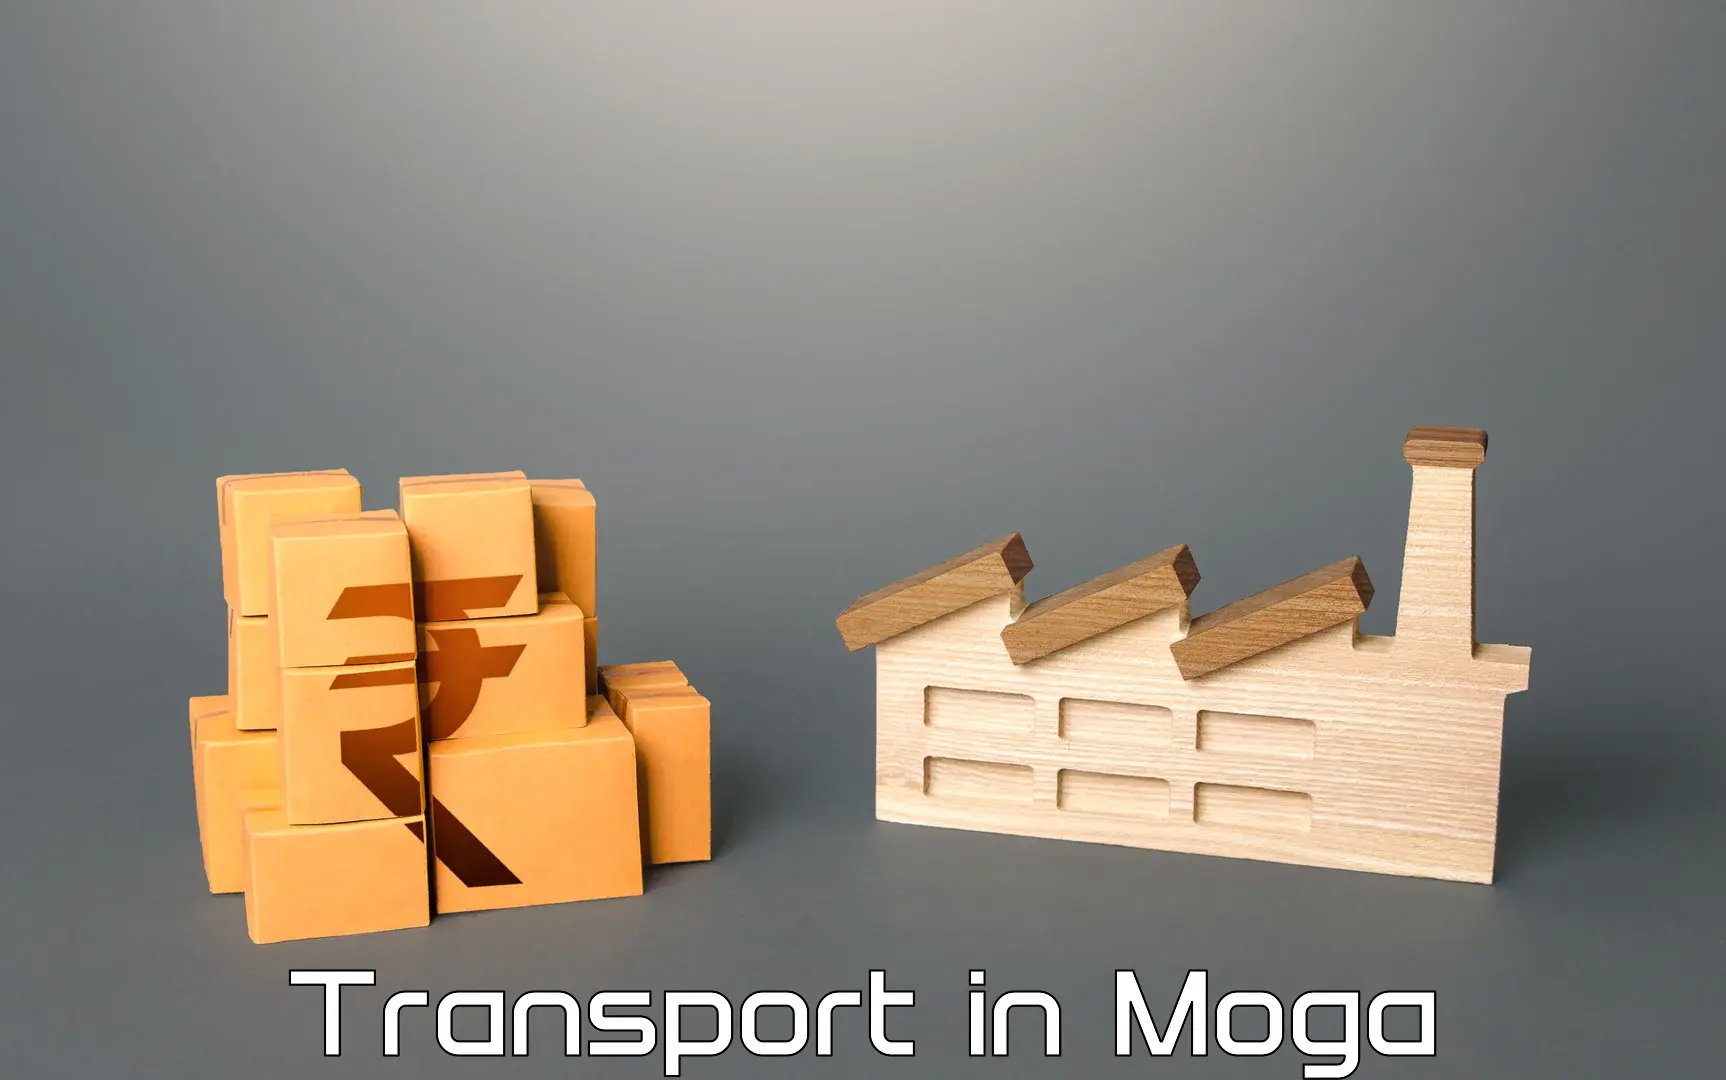 Furniture transport service in Moga